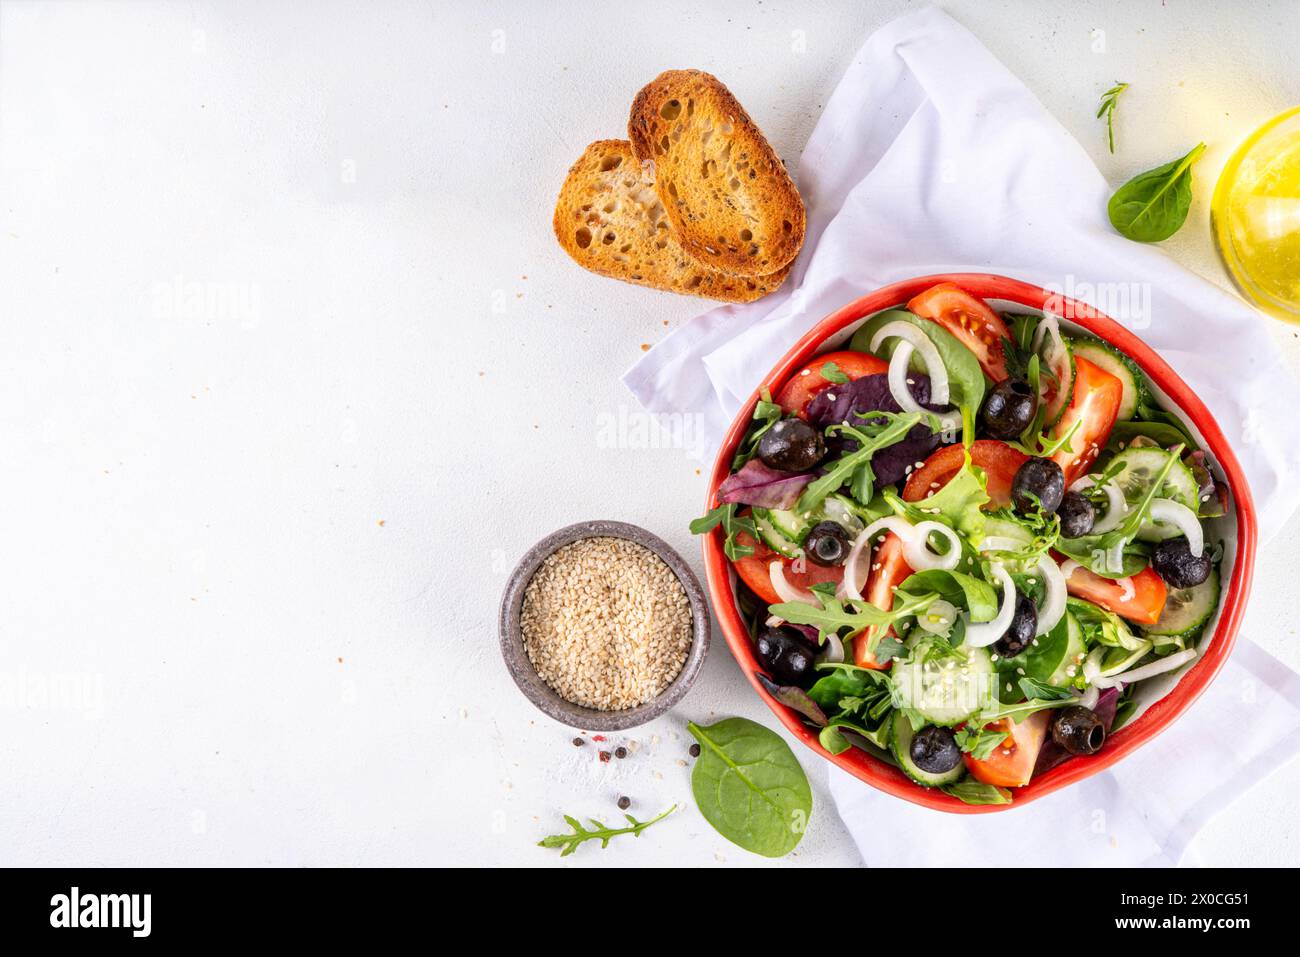 Salade biologique fraîche avec tomates, concombre, olives et légumes verts. Nourriture végétalienne saine, salade grecque de légumes méditerranéens sur table de cuisine blanche co Banque D'Images